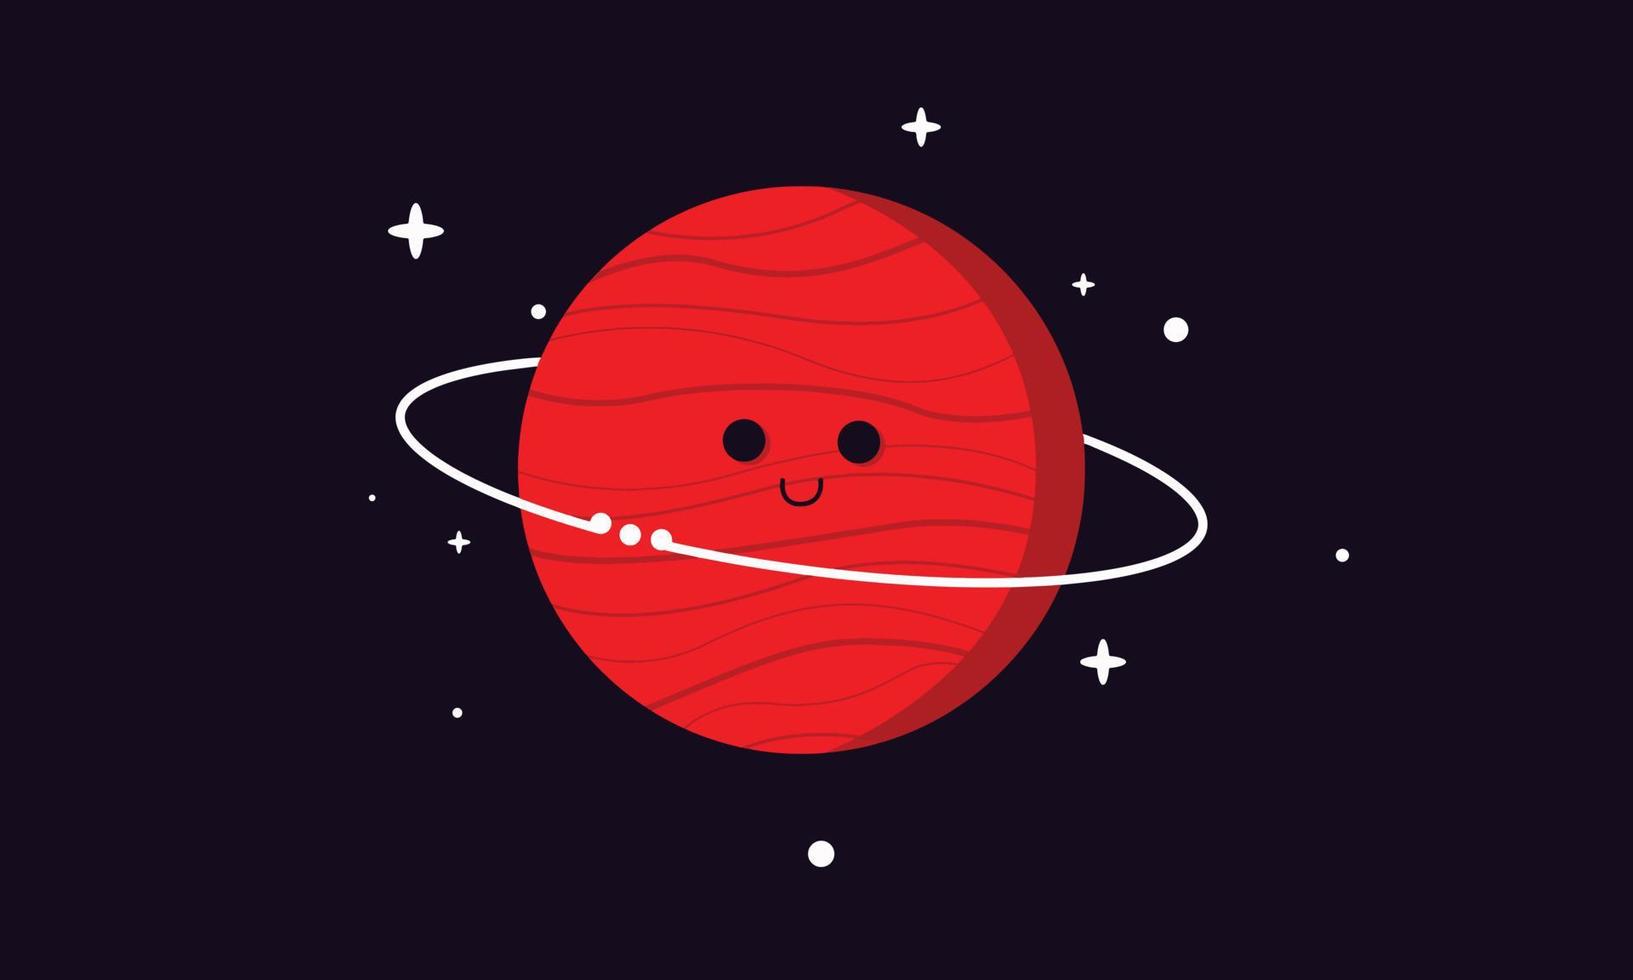 sorrindo lindo planeta no espaço escuro. Saturno vermelho com anéis e estrelas em fundo preto. desenho animado ilustração desenhado à mão de vetor de ciência astronomia.